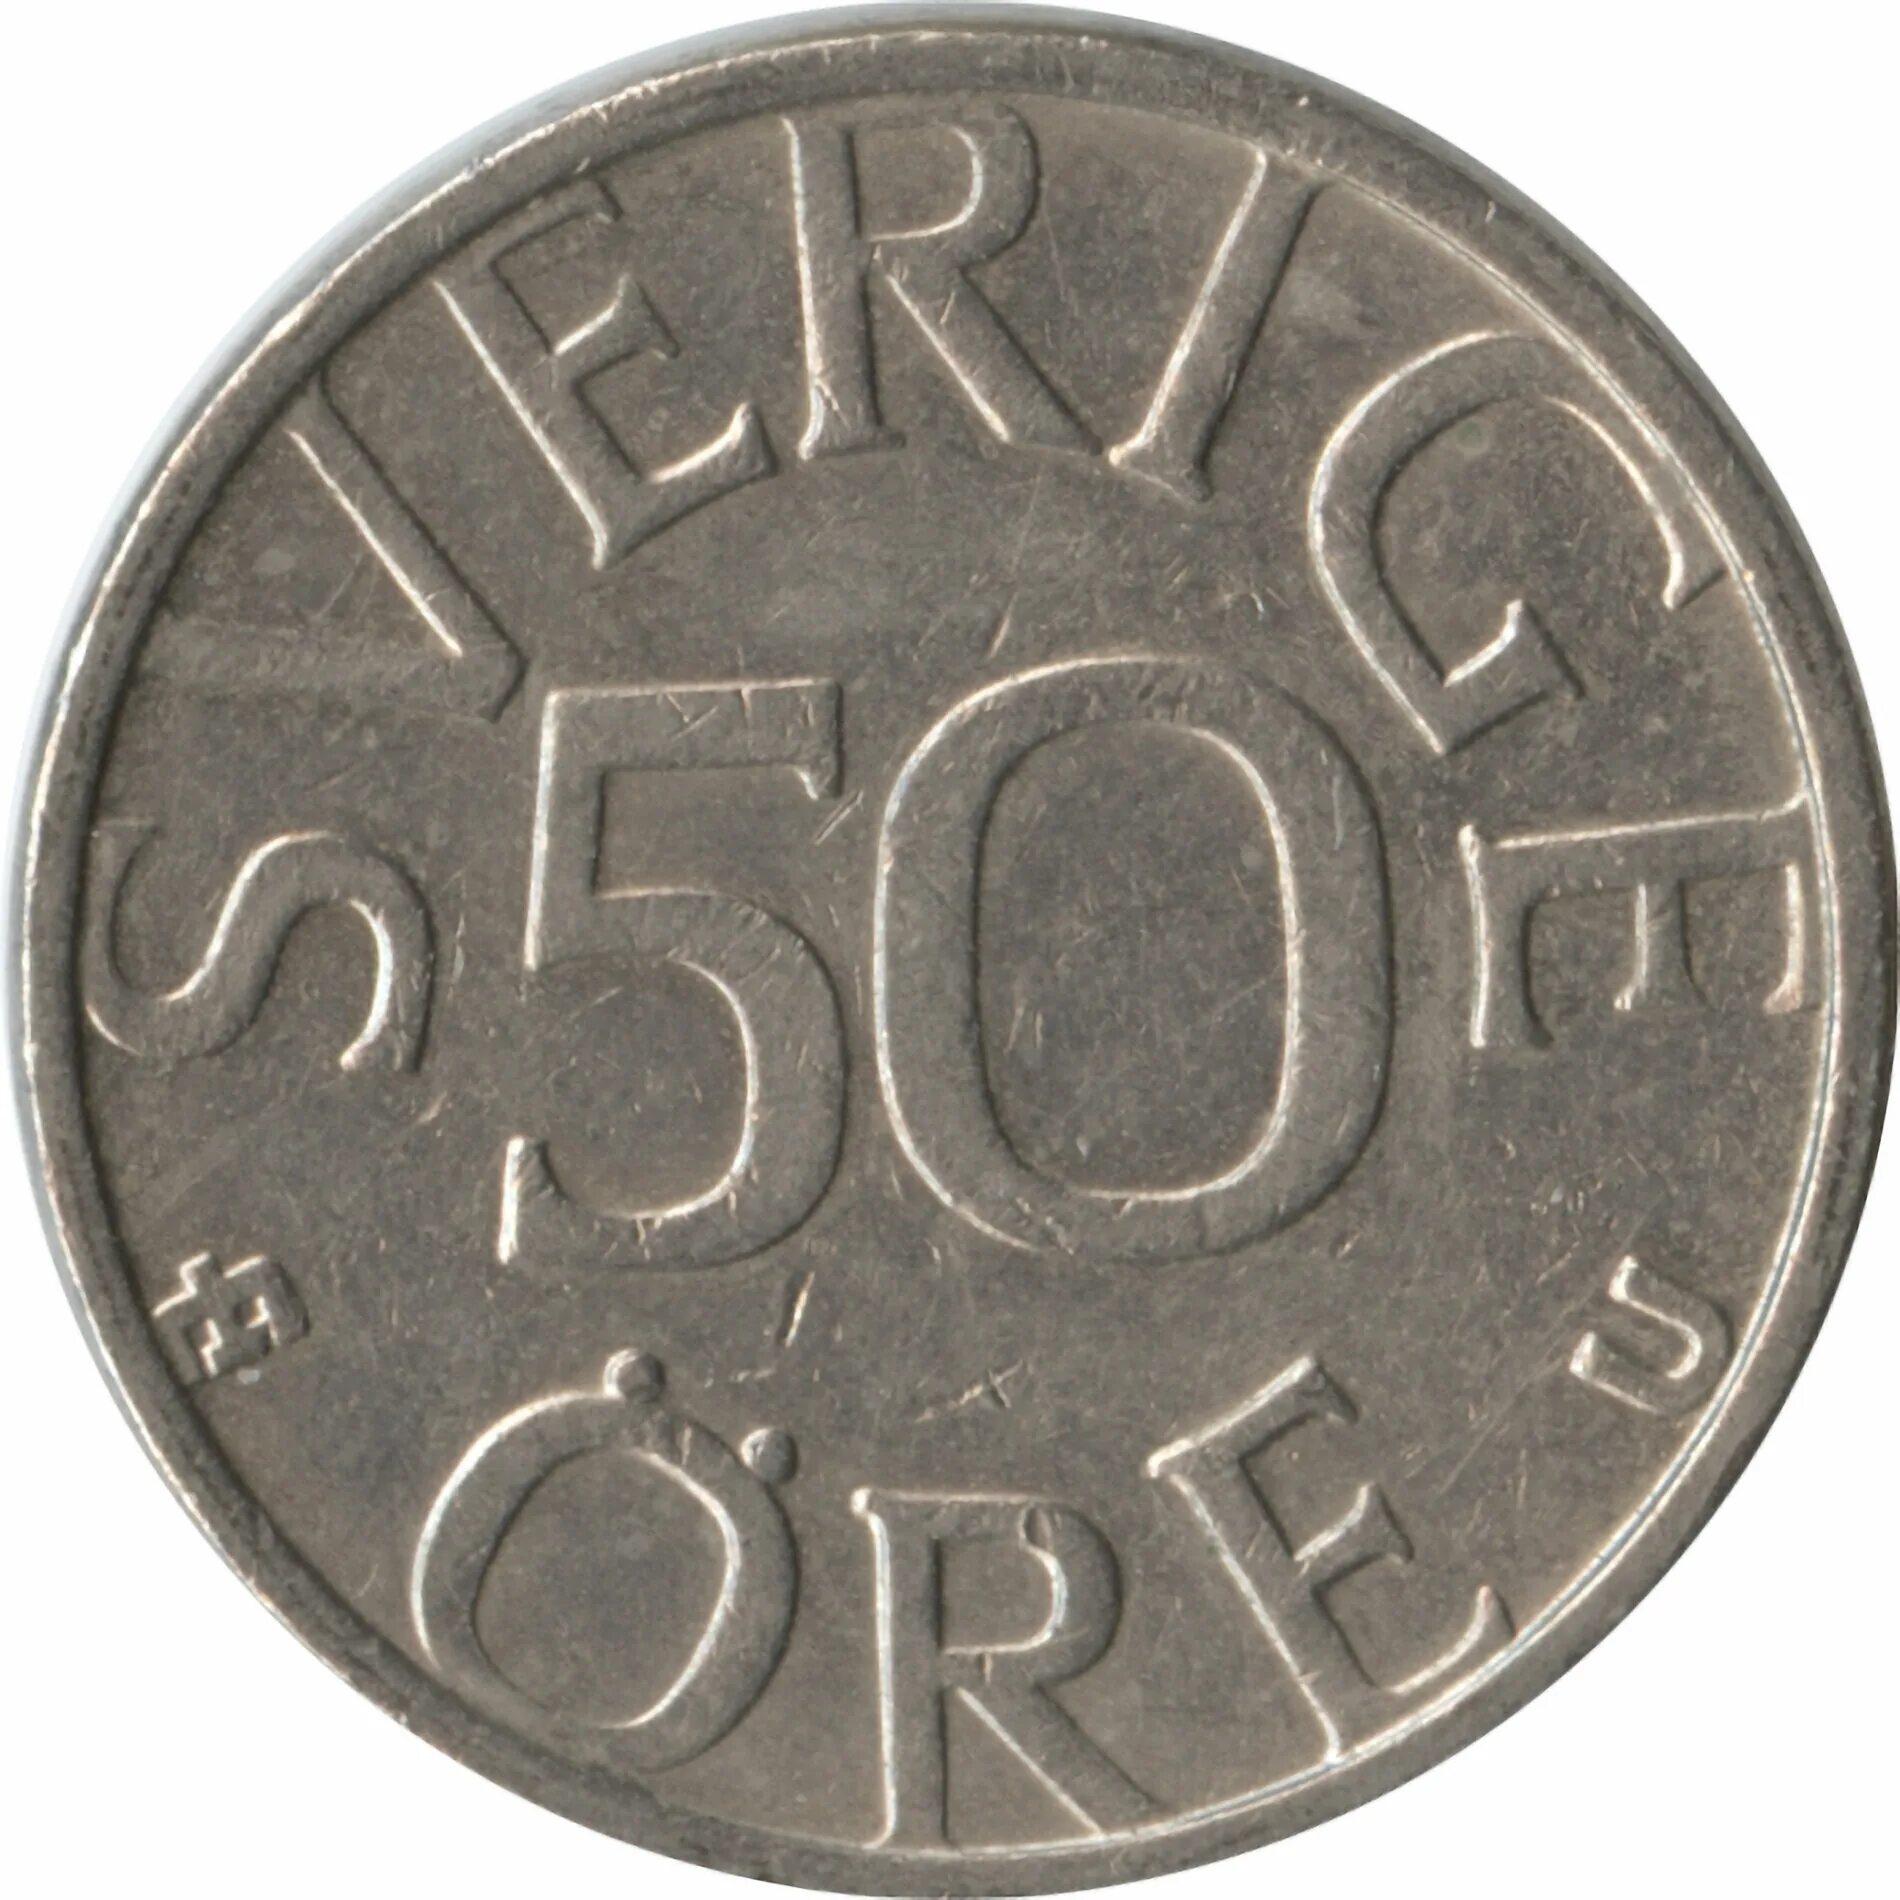 Шведская денежная единица. Carl 16 Gustaf Sverige монета. Carl XVI Gustaf монета.